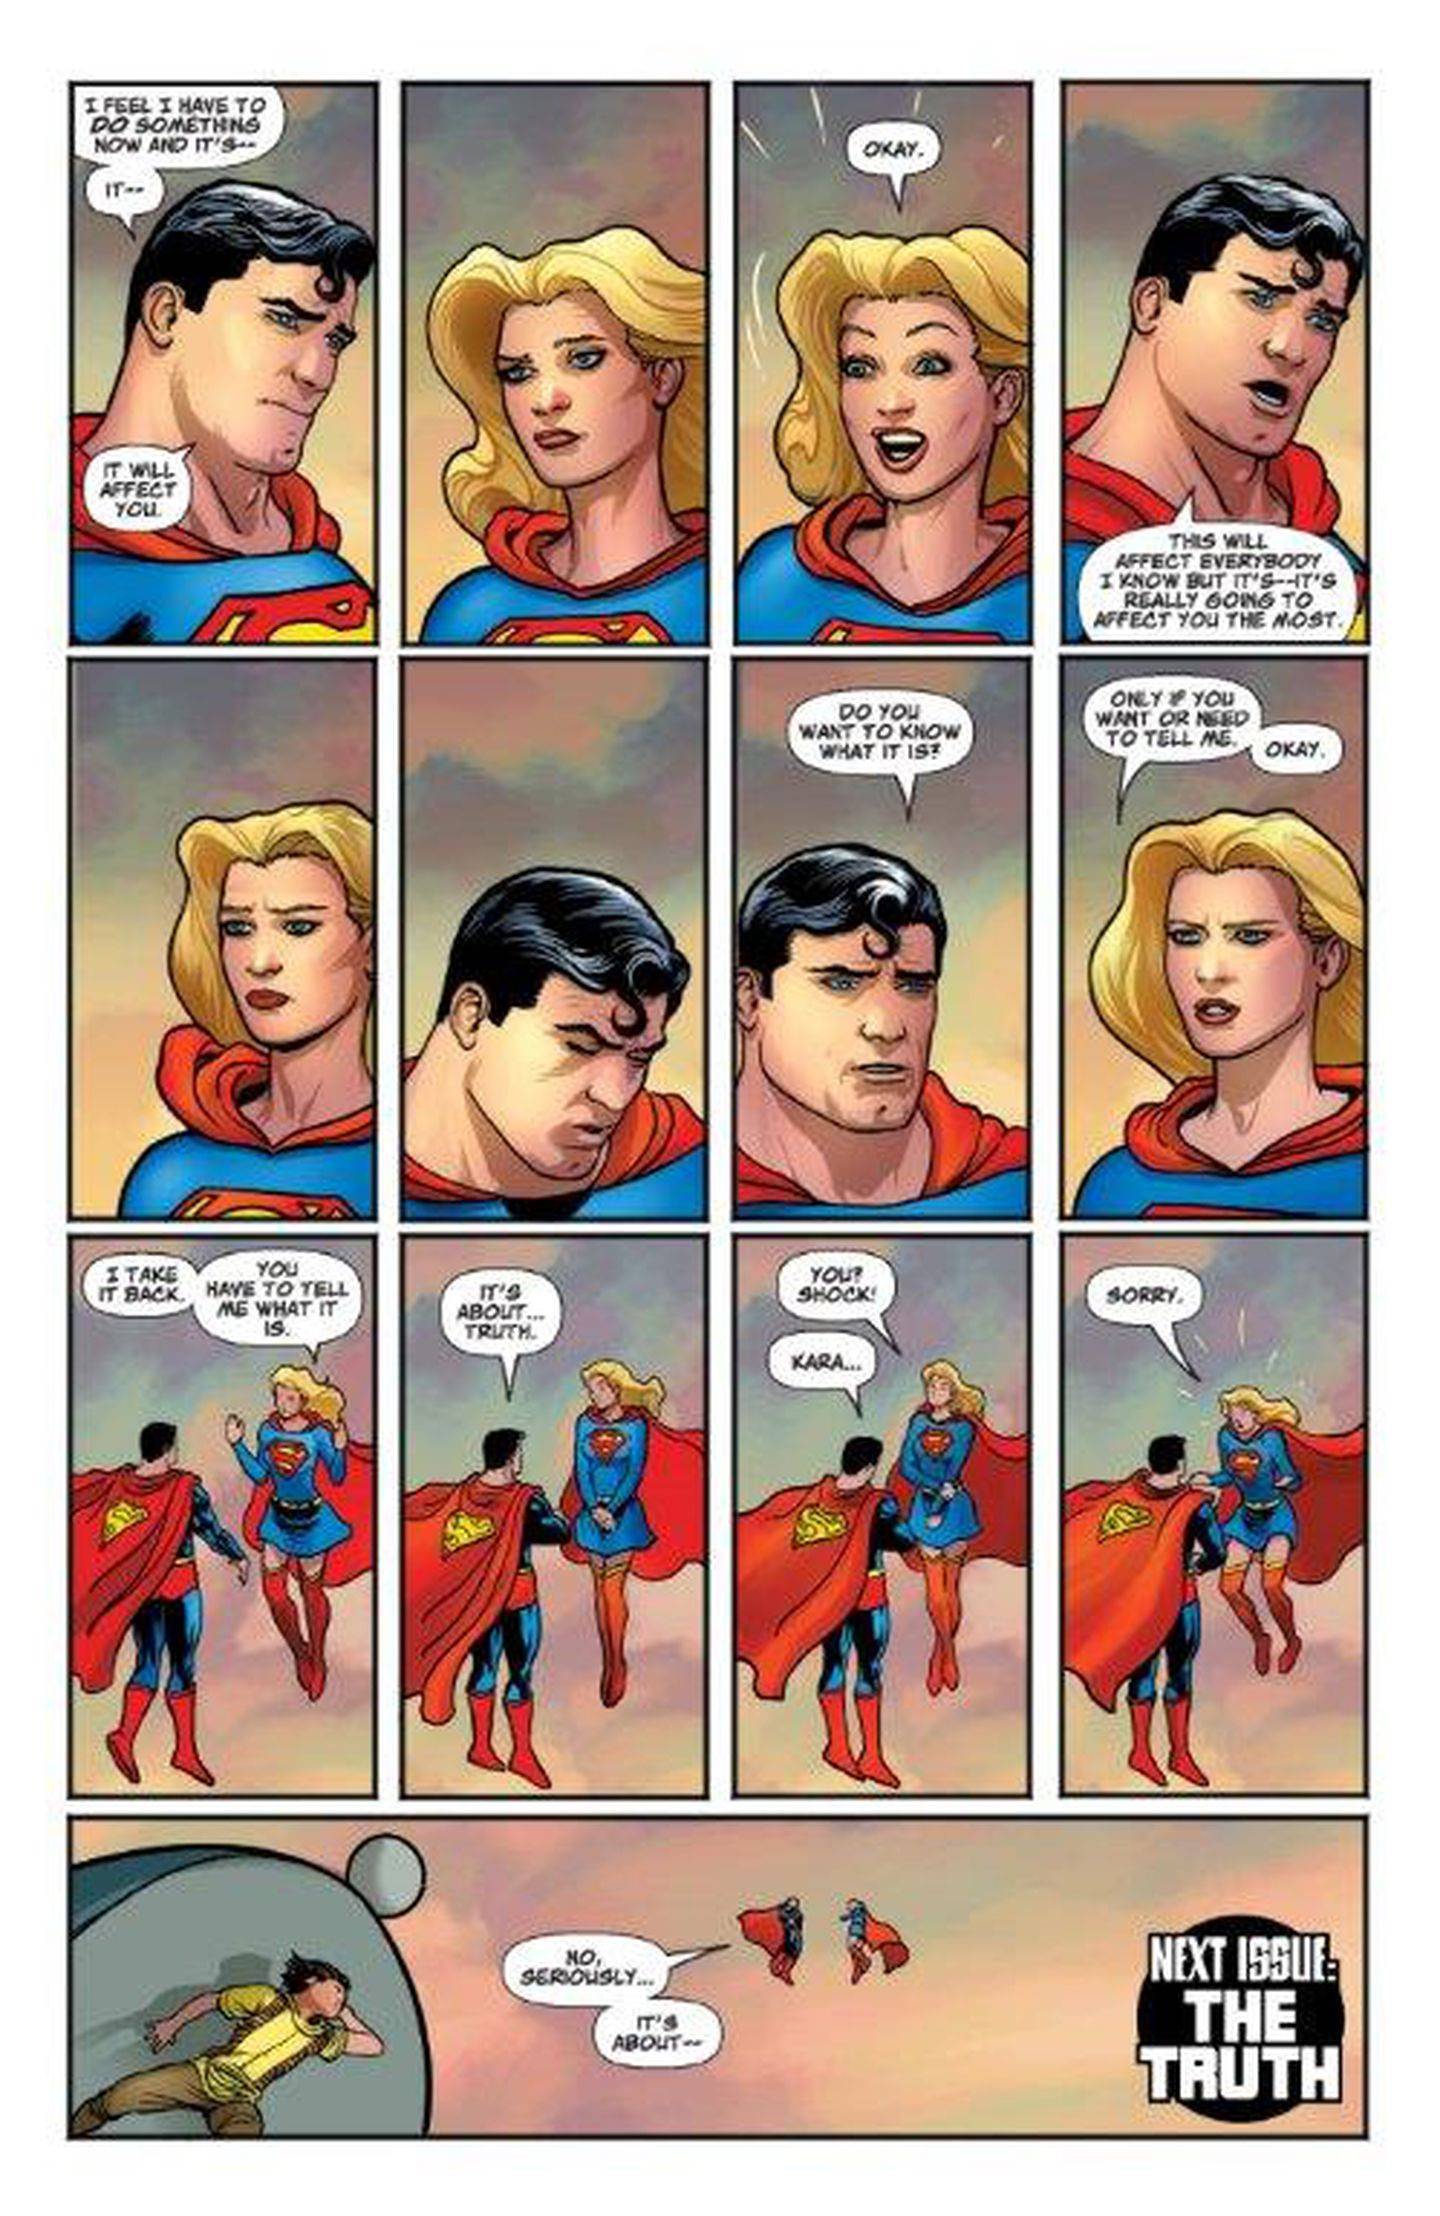 / Supergirl Superman Special Nr.8 1998 100 Seiten